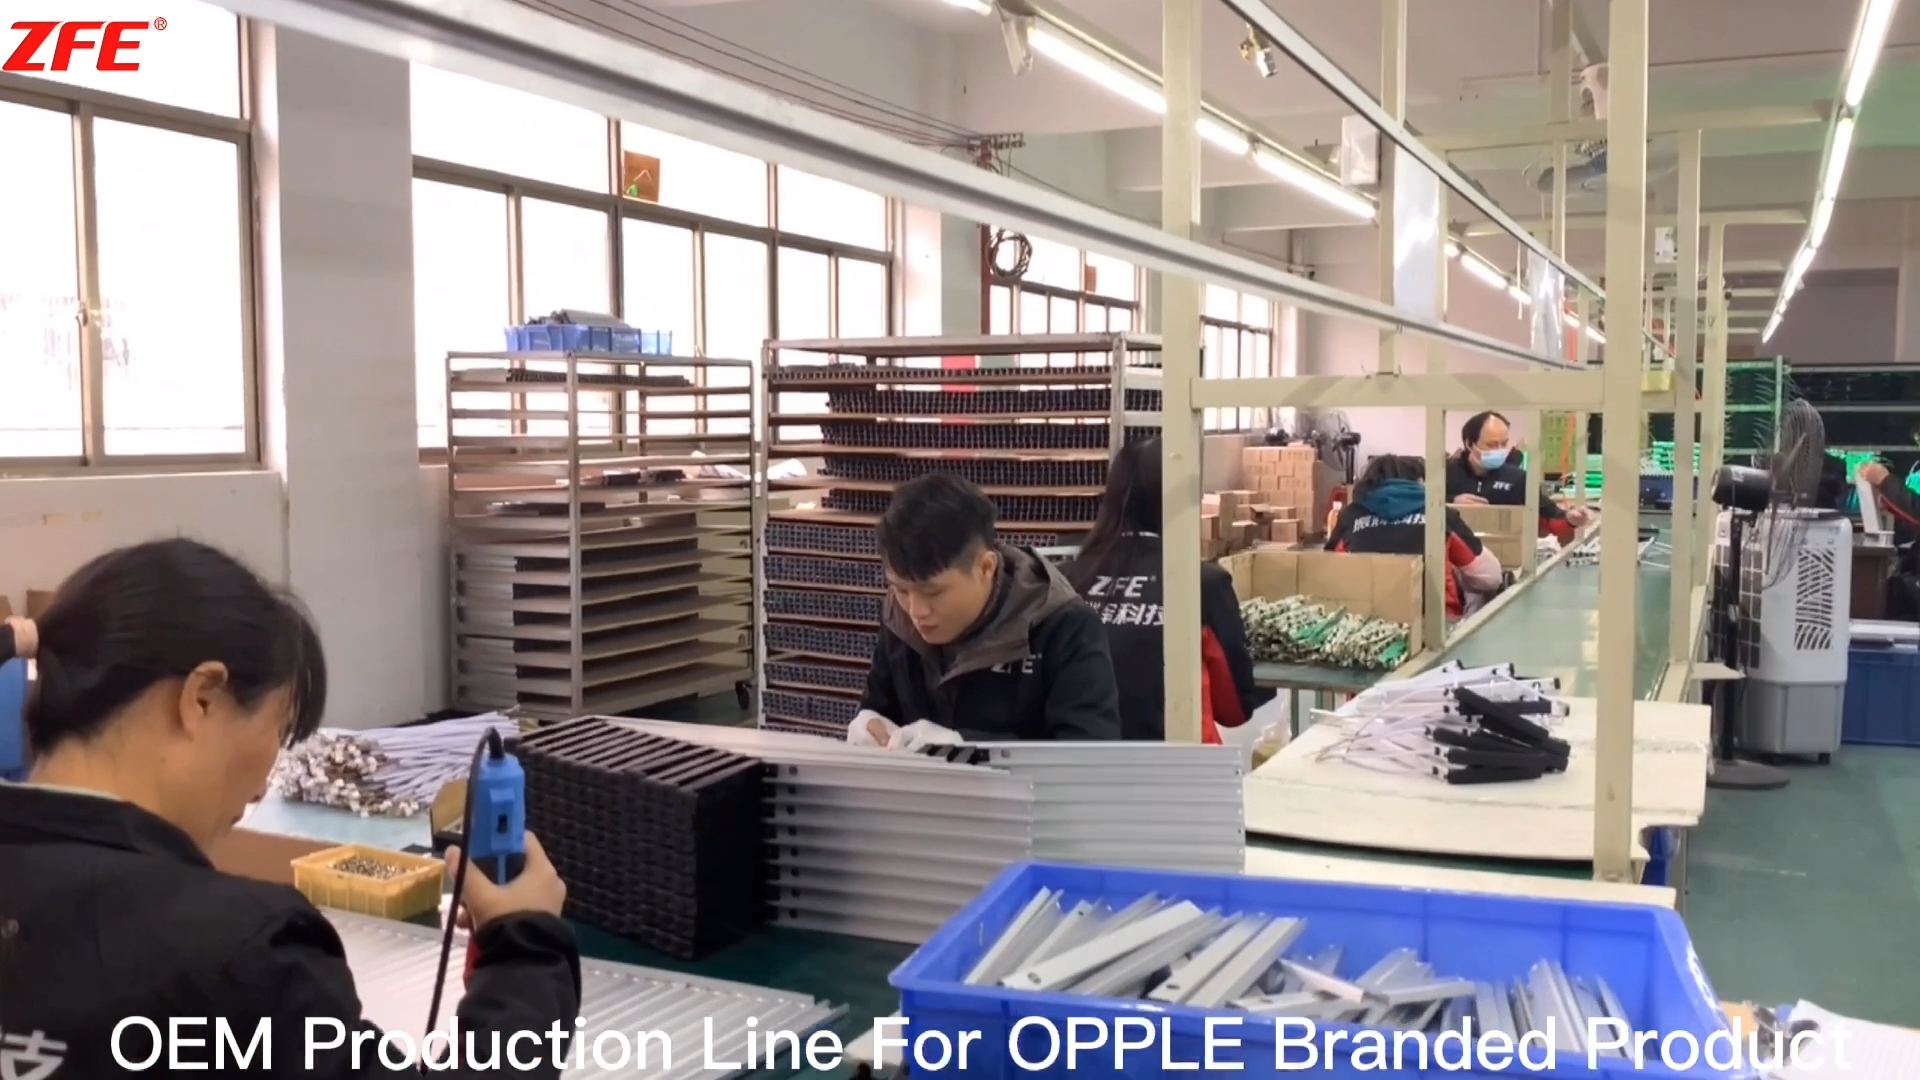 Räätälöity OEM-tuotantolinja OPPLE-merkkituotteelle, jonka on valmistanut Guangdong Zhenhui Fire Technology